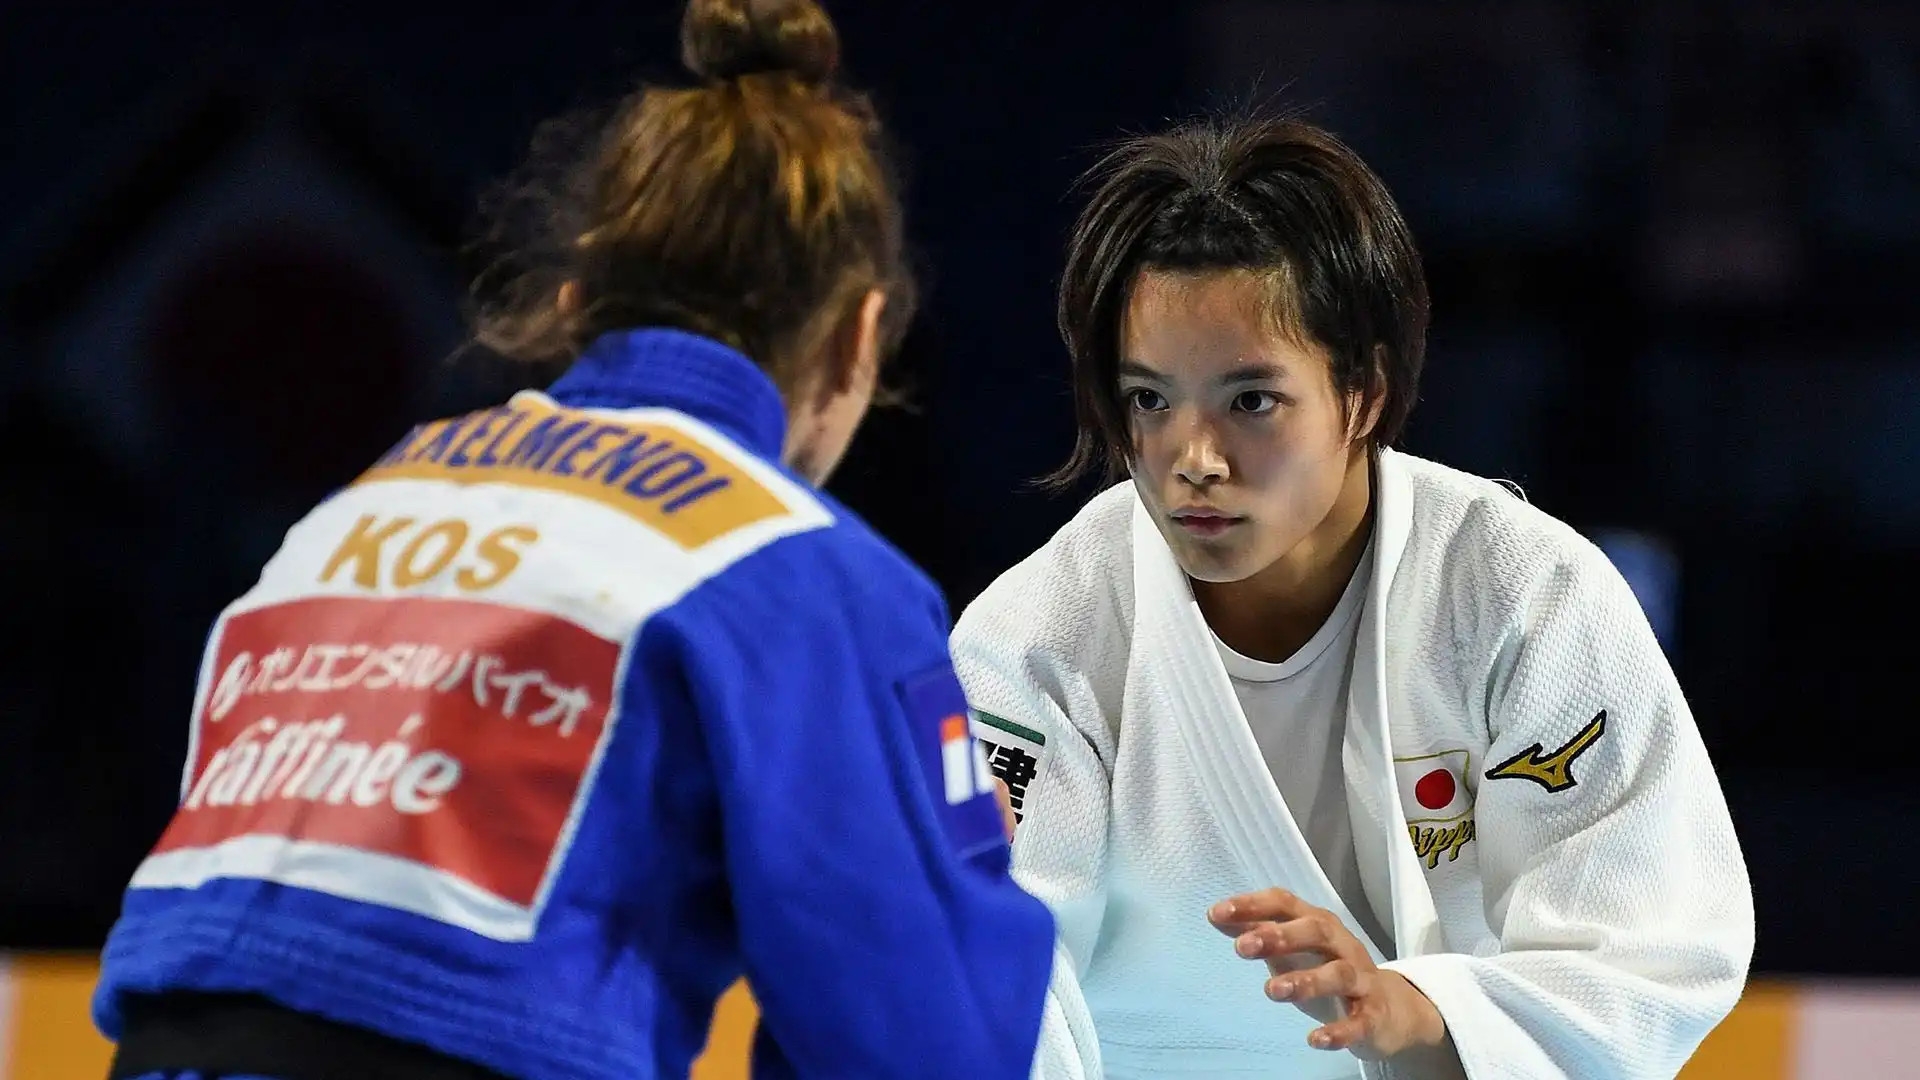 Grazia e potenza: la judoka Uta Abe è una delle atlete più popolari del Giappone